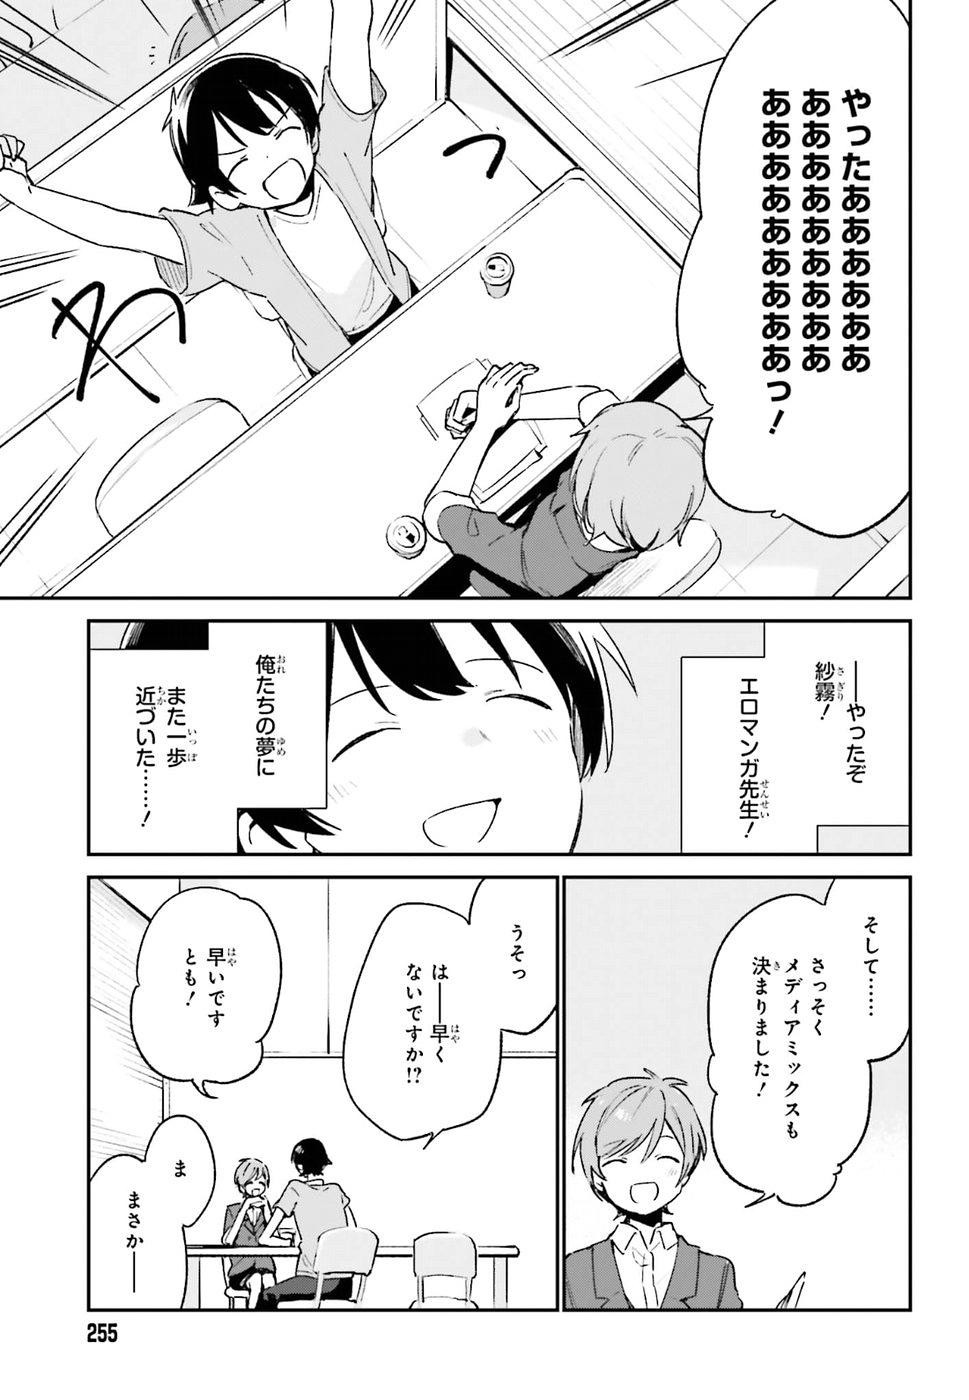 Ero Manga Sensei - Chapter 46 - Page 19